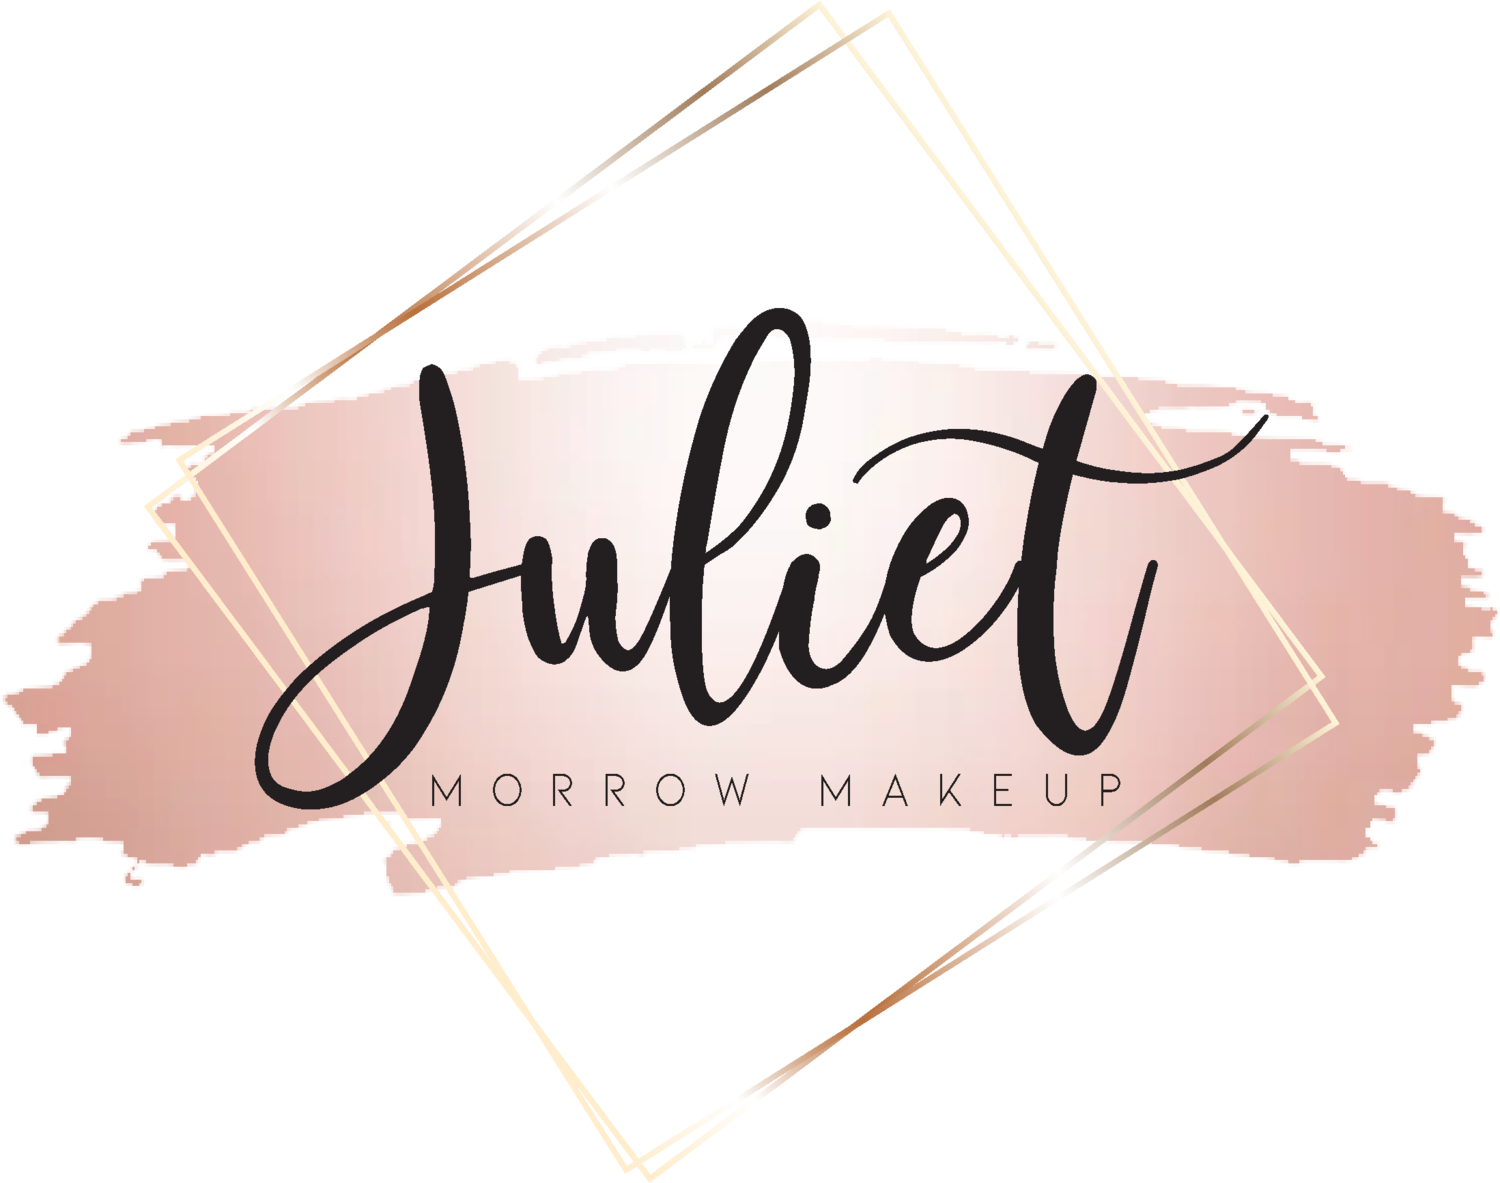 Juliet Morrow makeup